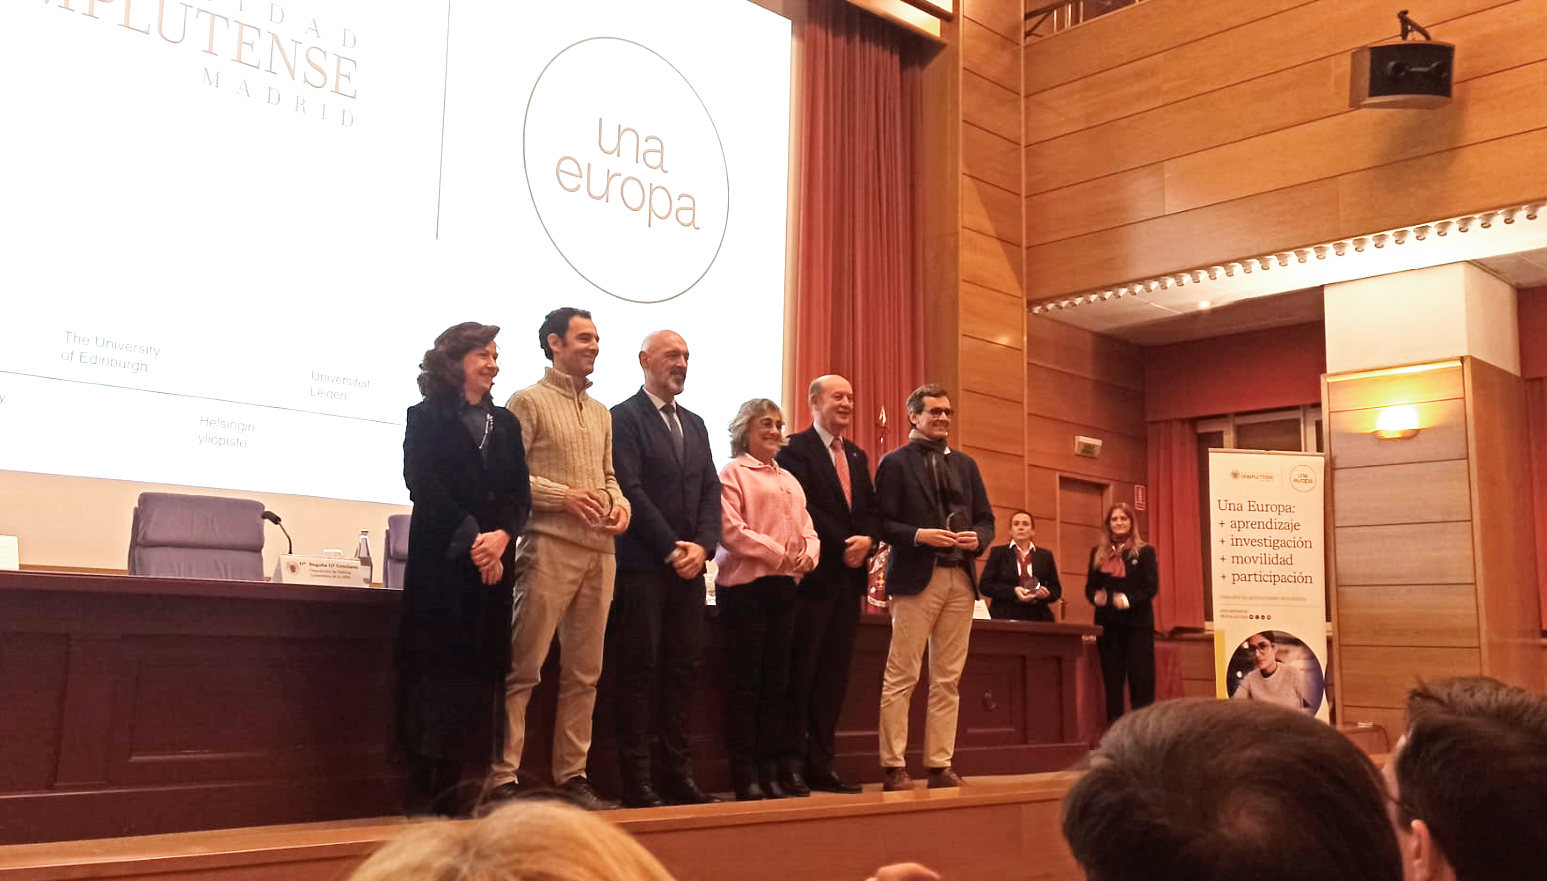 Premios alianza Una Europa - 2